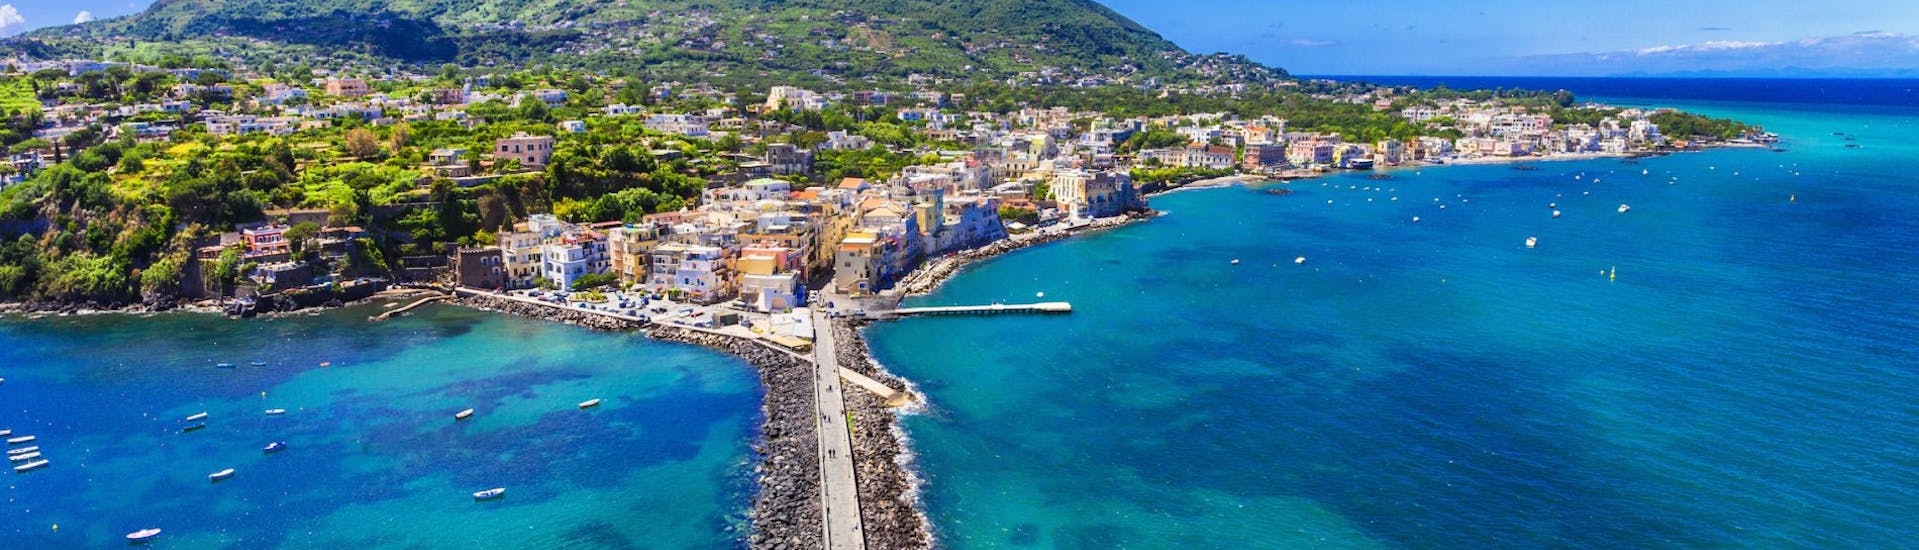 Alle deelnemers aan onze boottocht van Ischia naar Procida kunnen per boot genieten van dit prachtige uitzicht op Ischia.